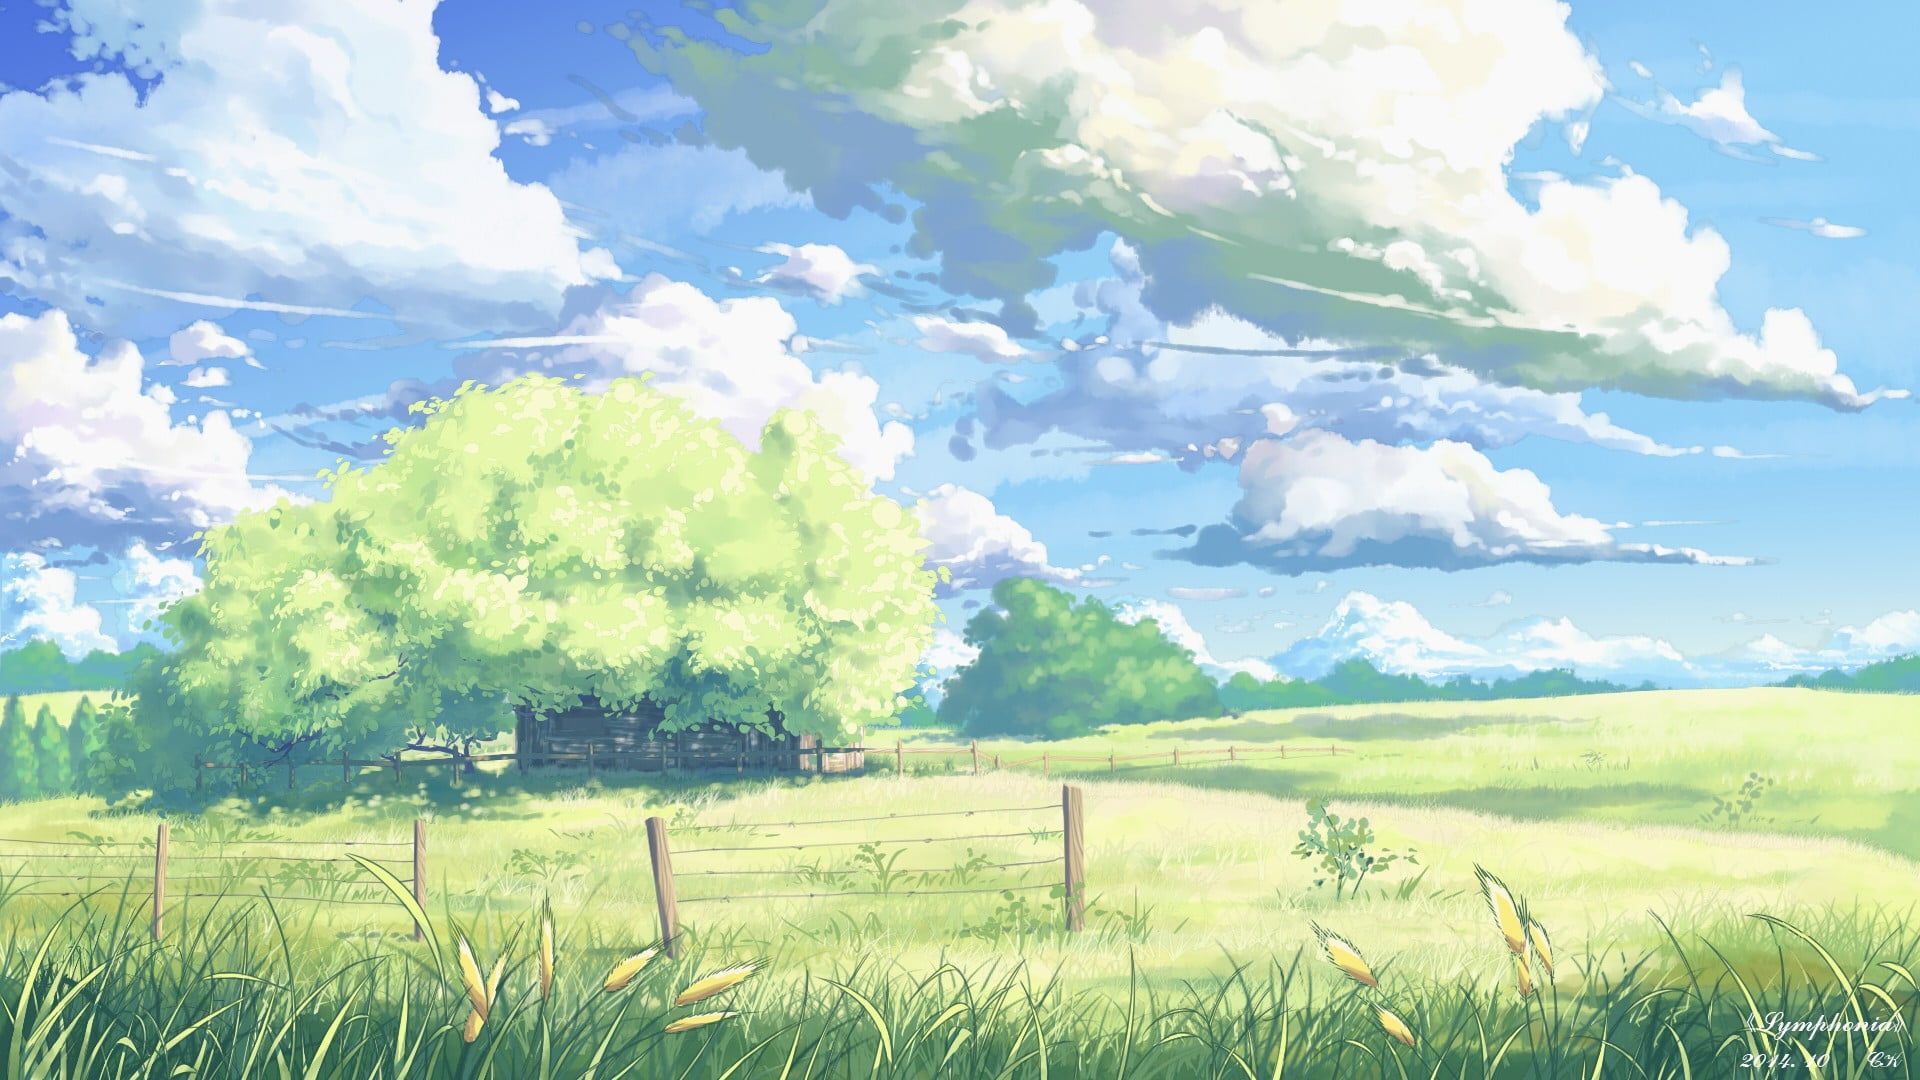 Grass animated Makoto Shinkai 5 Centimeters Per Second drawn skyscapes  wallpaper  1920x1080   Landscape wallpaper Anime backgrounds  wallpapers Anime background